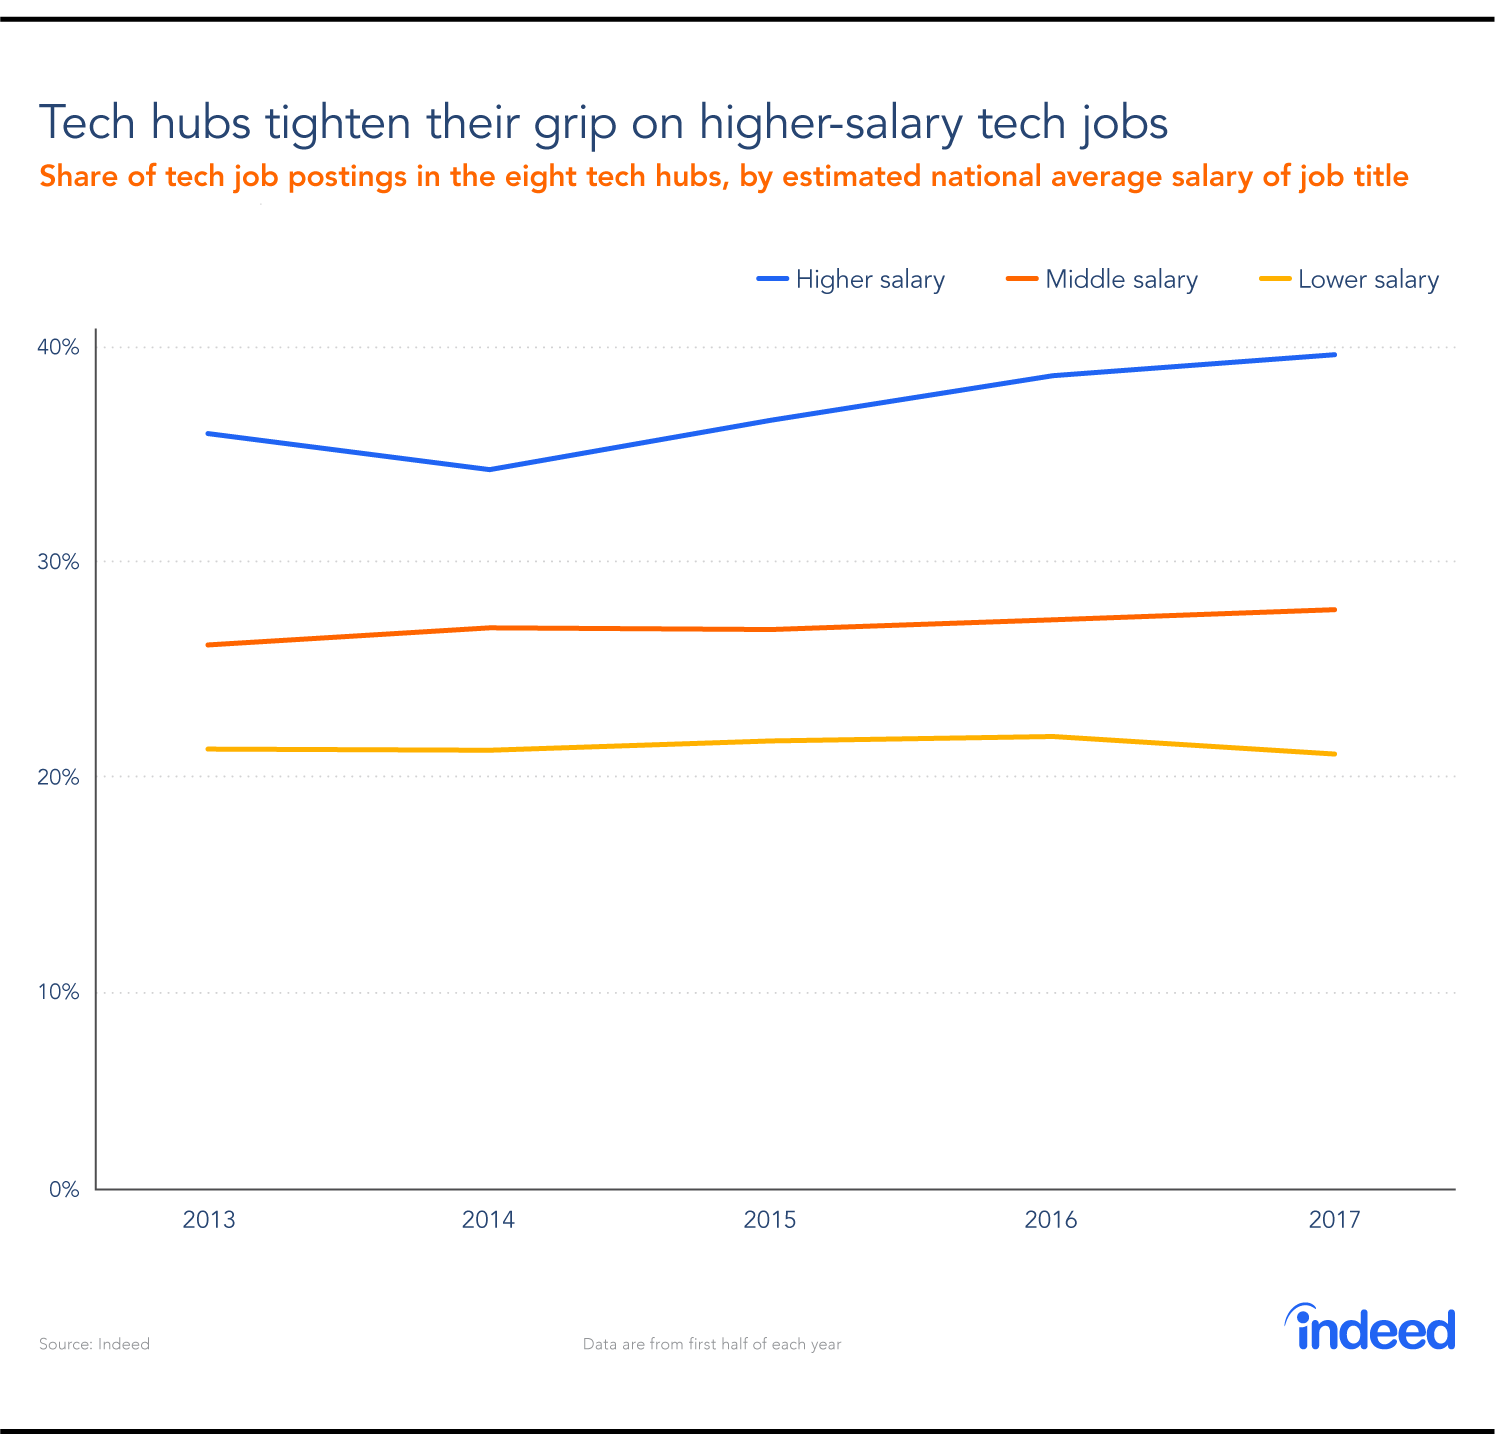 Tech hubs tighten their grip on higher-salary tech jobs